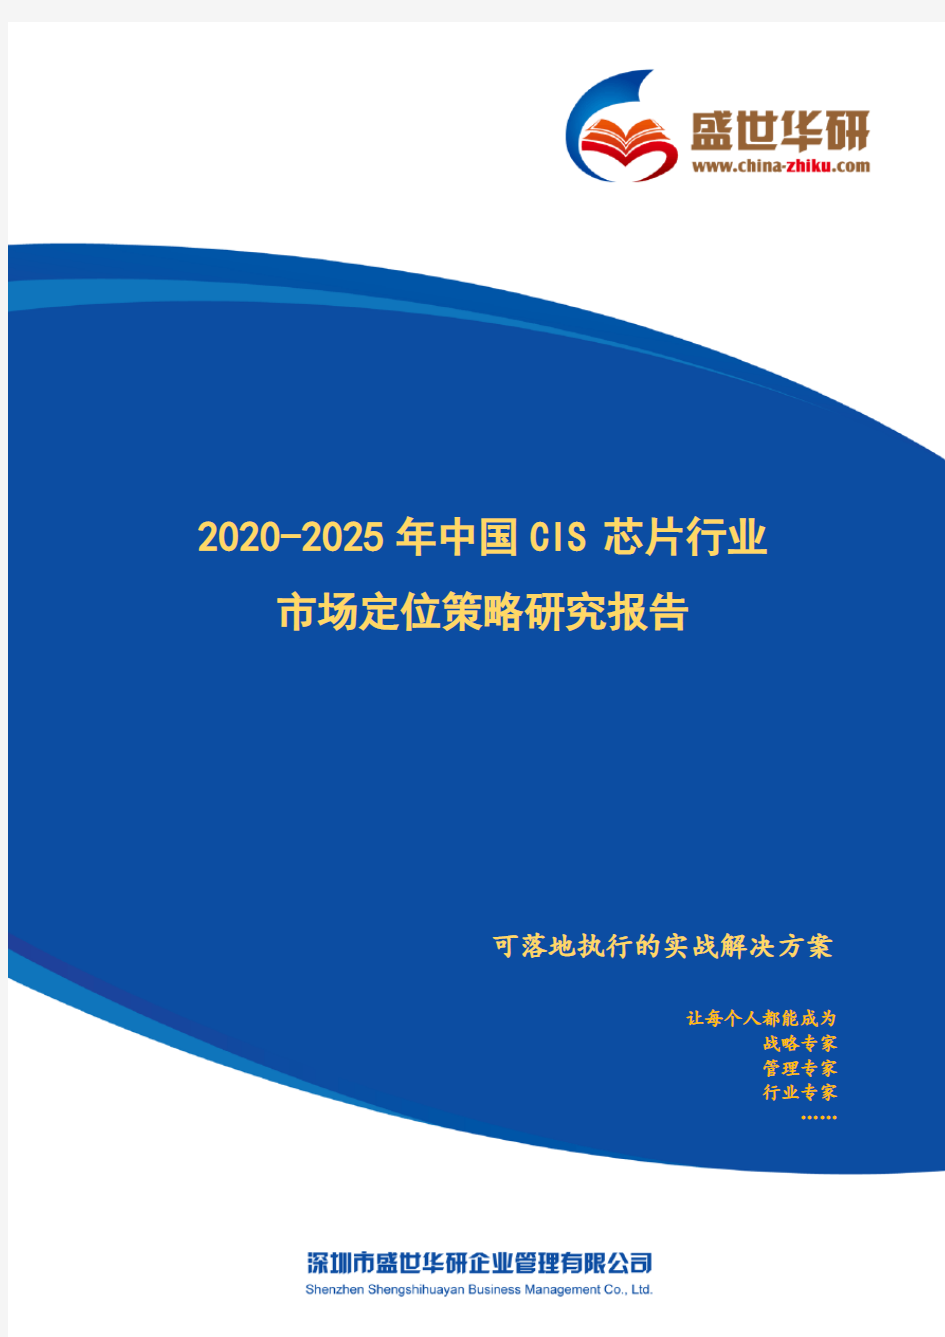 【完整版】2020-2025年中国CIS芯片行业市场定位策略研究报告